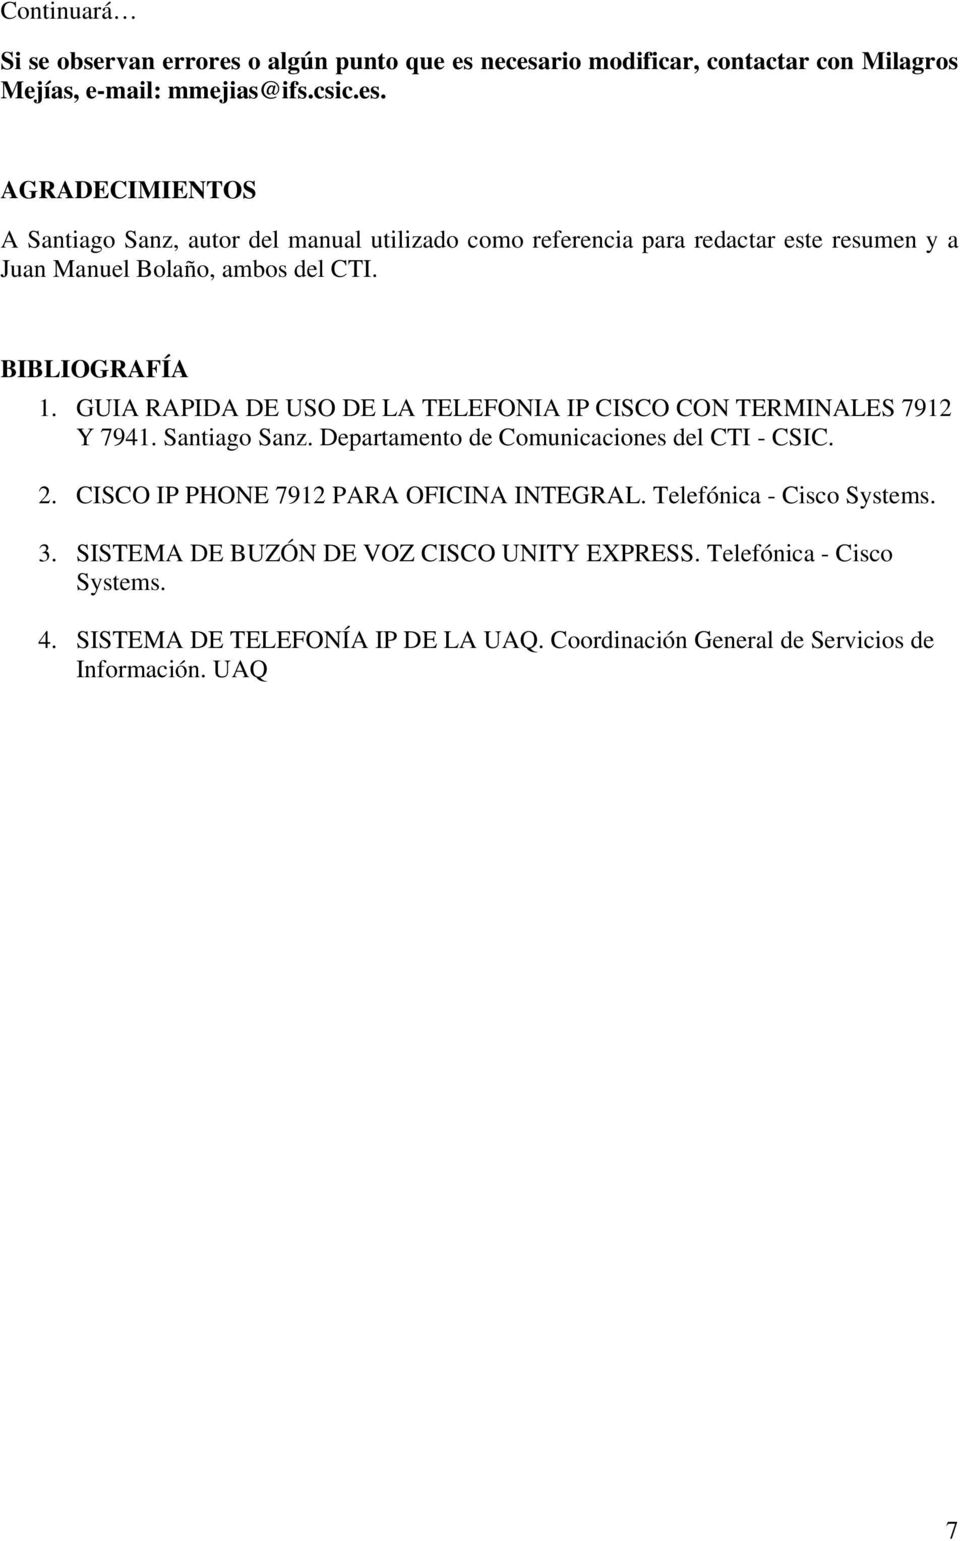 BIBLIOGRAFÍA 1. GUIA RAPIDA DE USO DE LA TELEFONIA IP CISCO CON TERMINALES 7912 Y 7941. Santiago Sanz. Departamento de Comunicaciones del CTI - CSIC. 2.